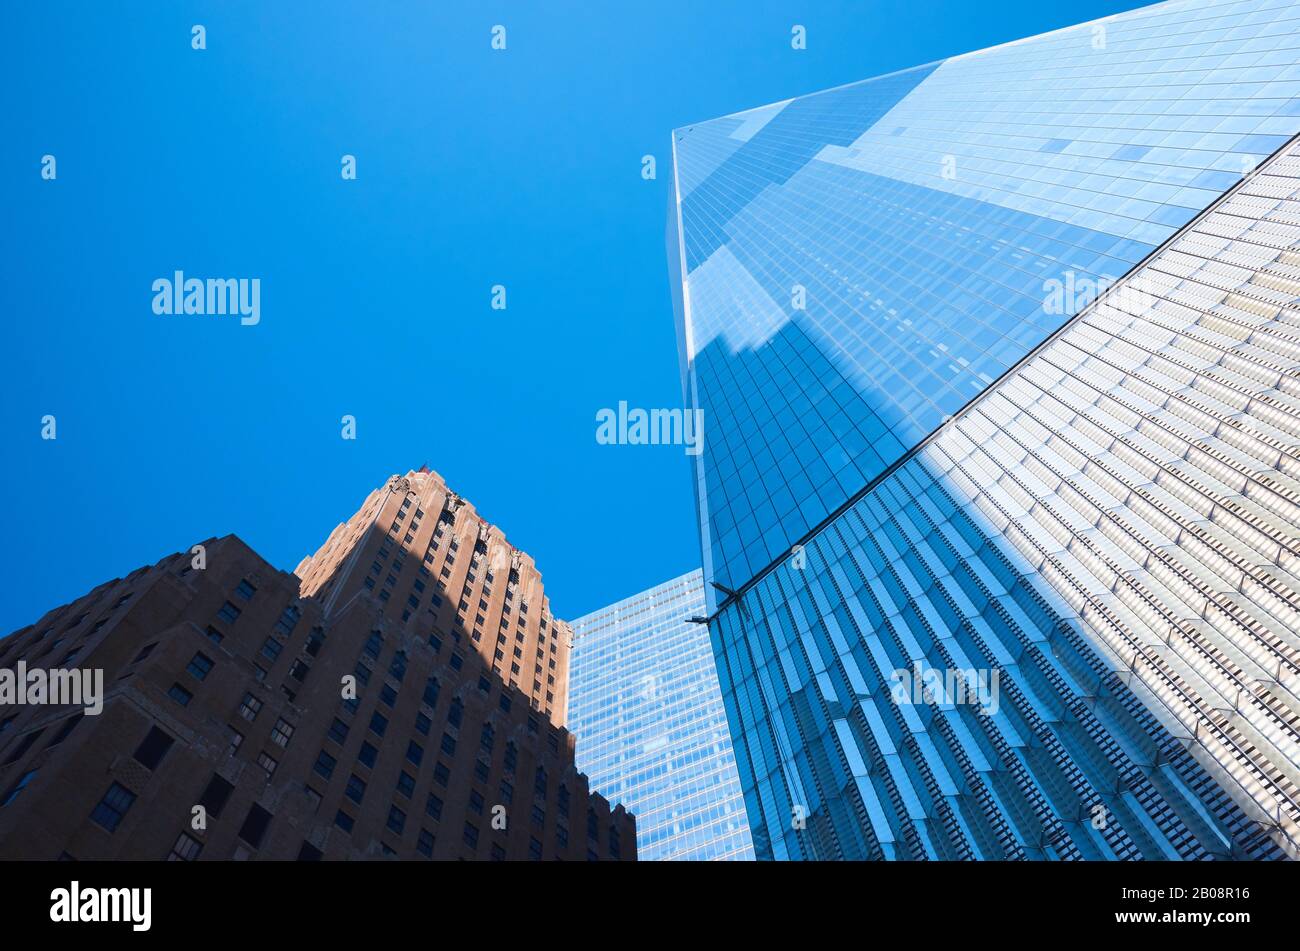 New York, USA - 05. Juli 2018: Nahaufnahme eines World Trade Centers (auch bekannt als Ein WTC oder Freedom Tower) gegen den blauen Himmel. Stockfoto